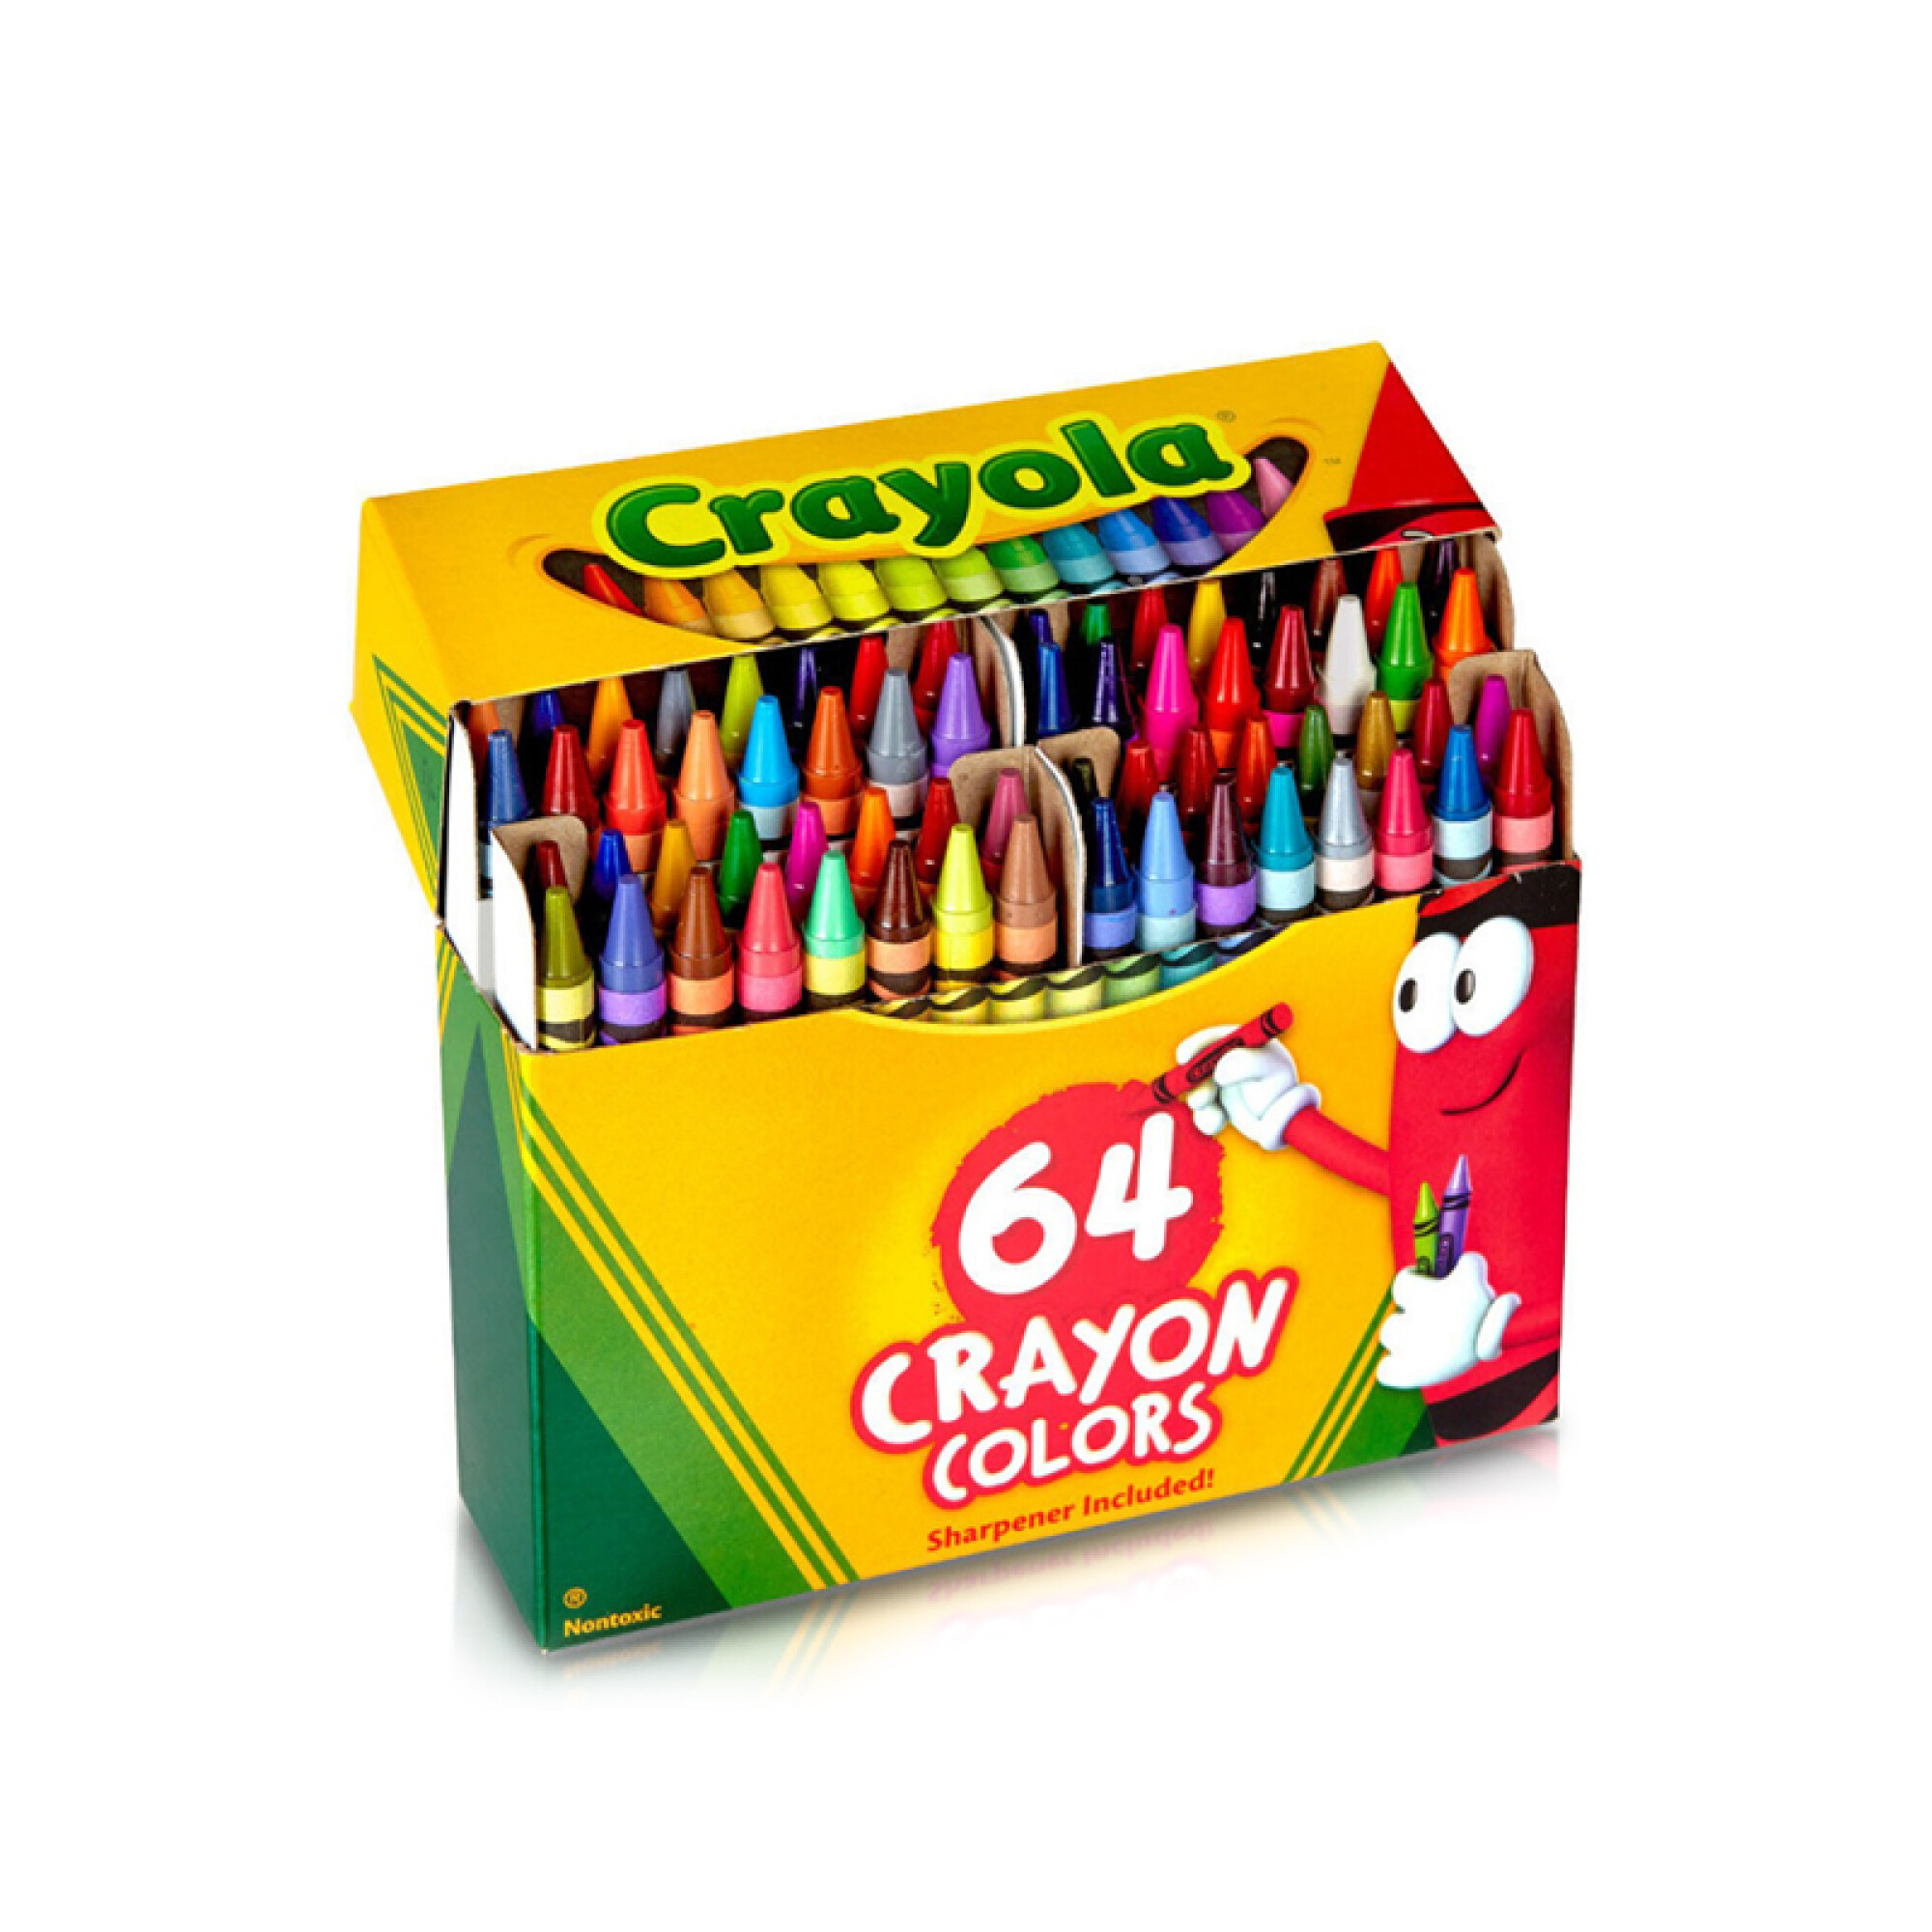 Caja de crayolas